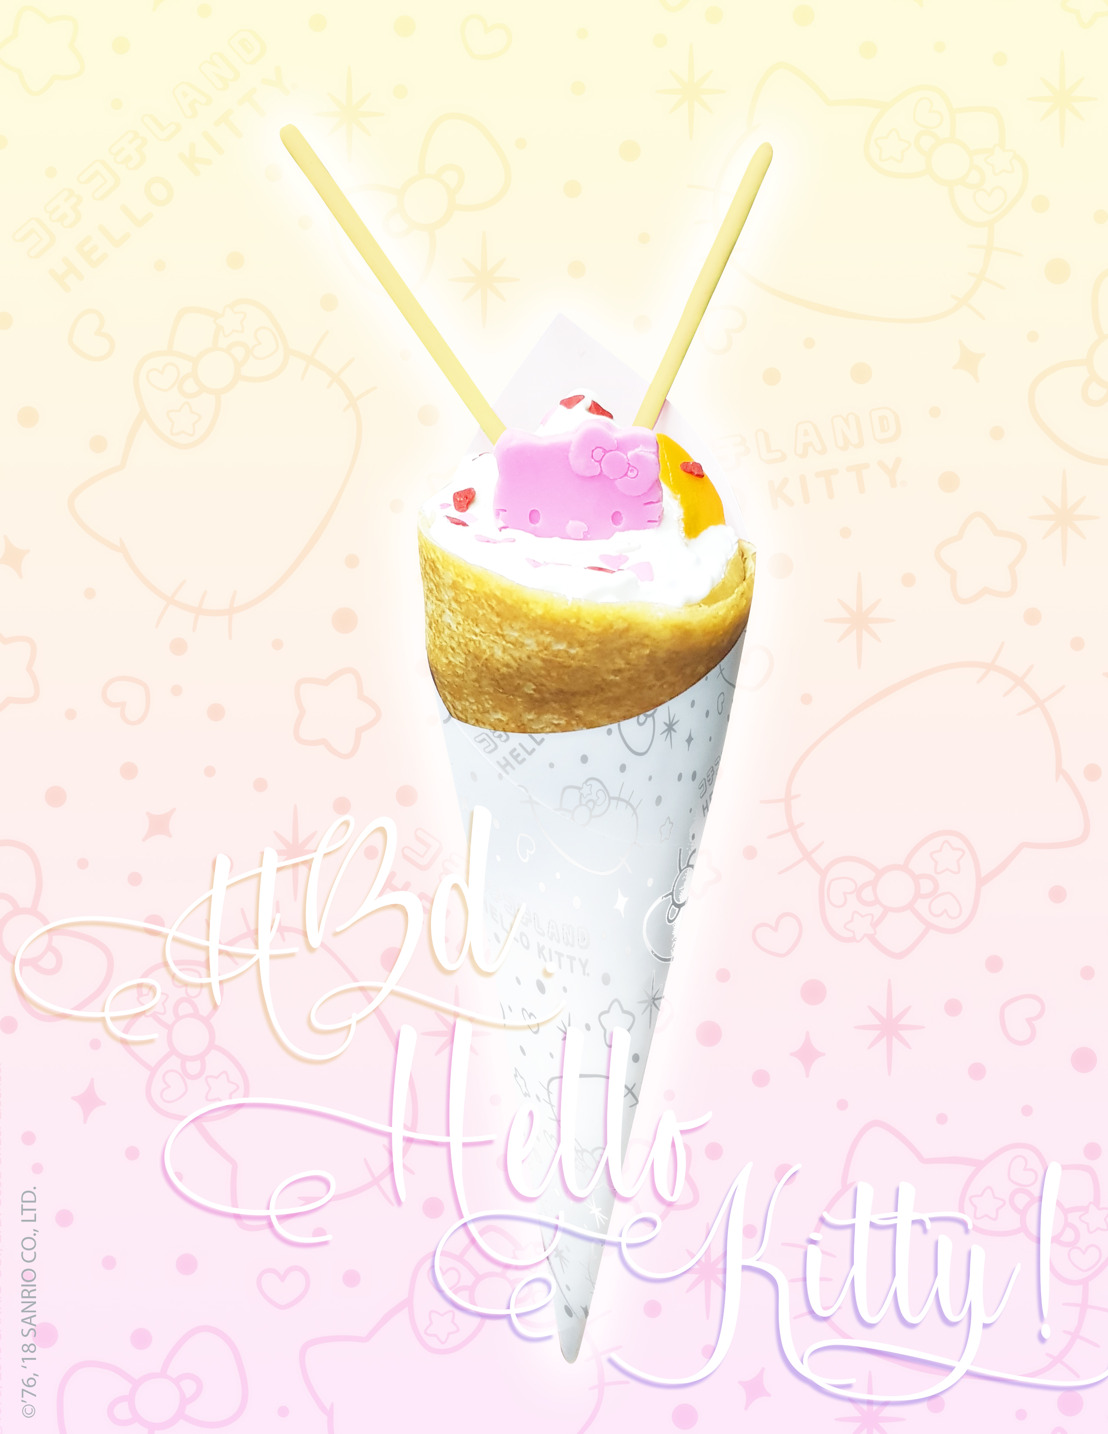 ¡Kochi Kochi Land creó deliciosas sorpresas para el cumpleaños de Hello Kitty!